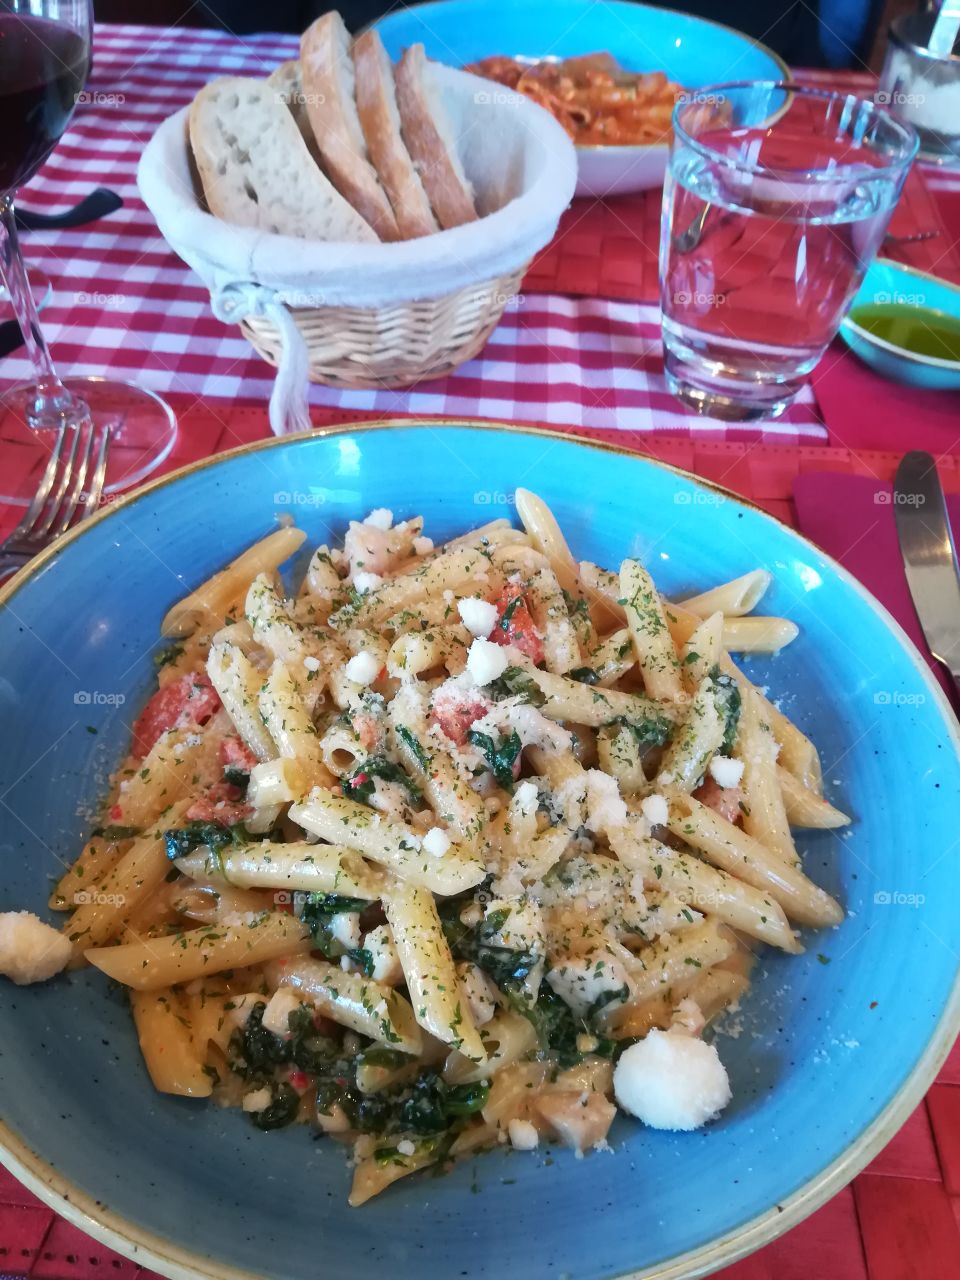 Italian food